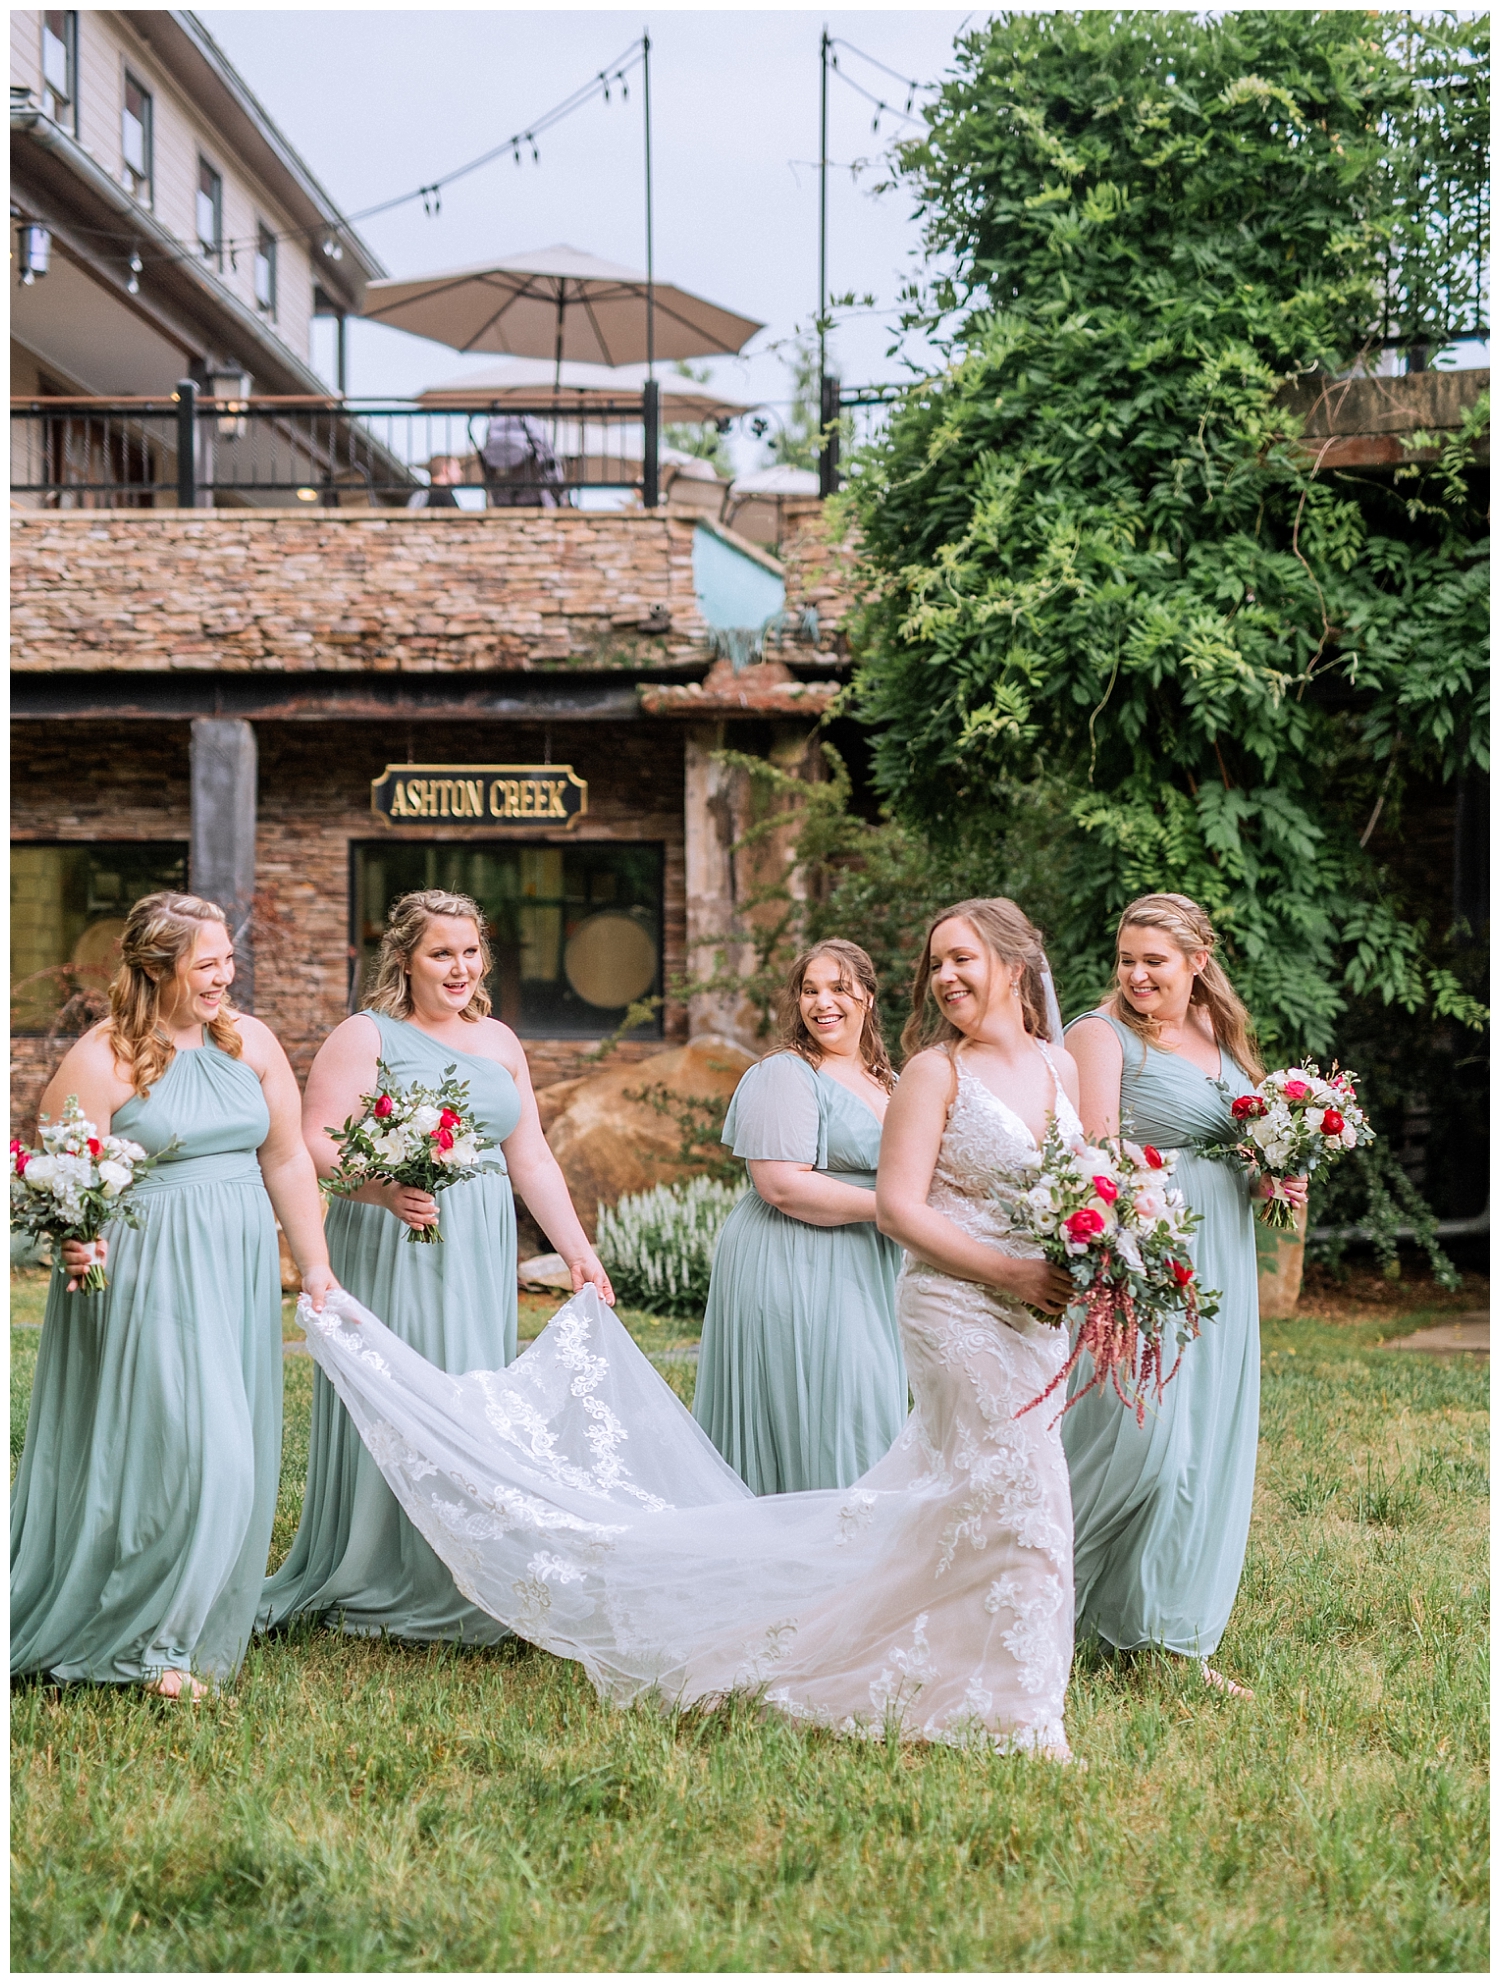 Sage Bridesmaids dresses at Ashton Creek Vineyard wedding